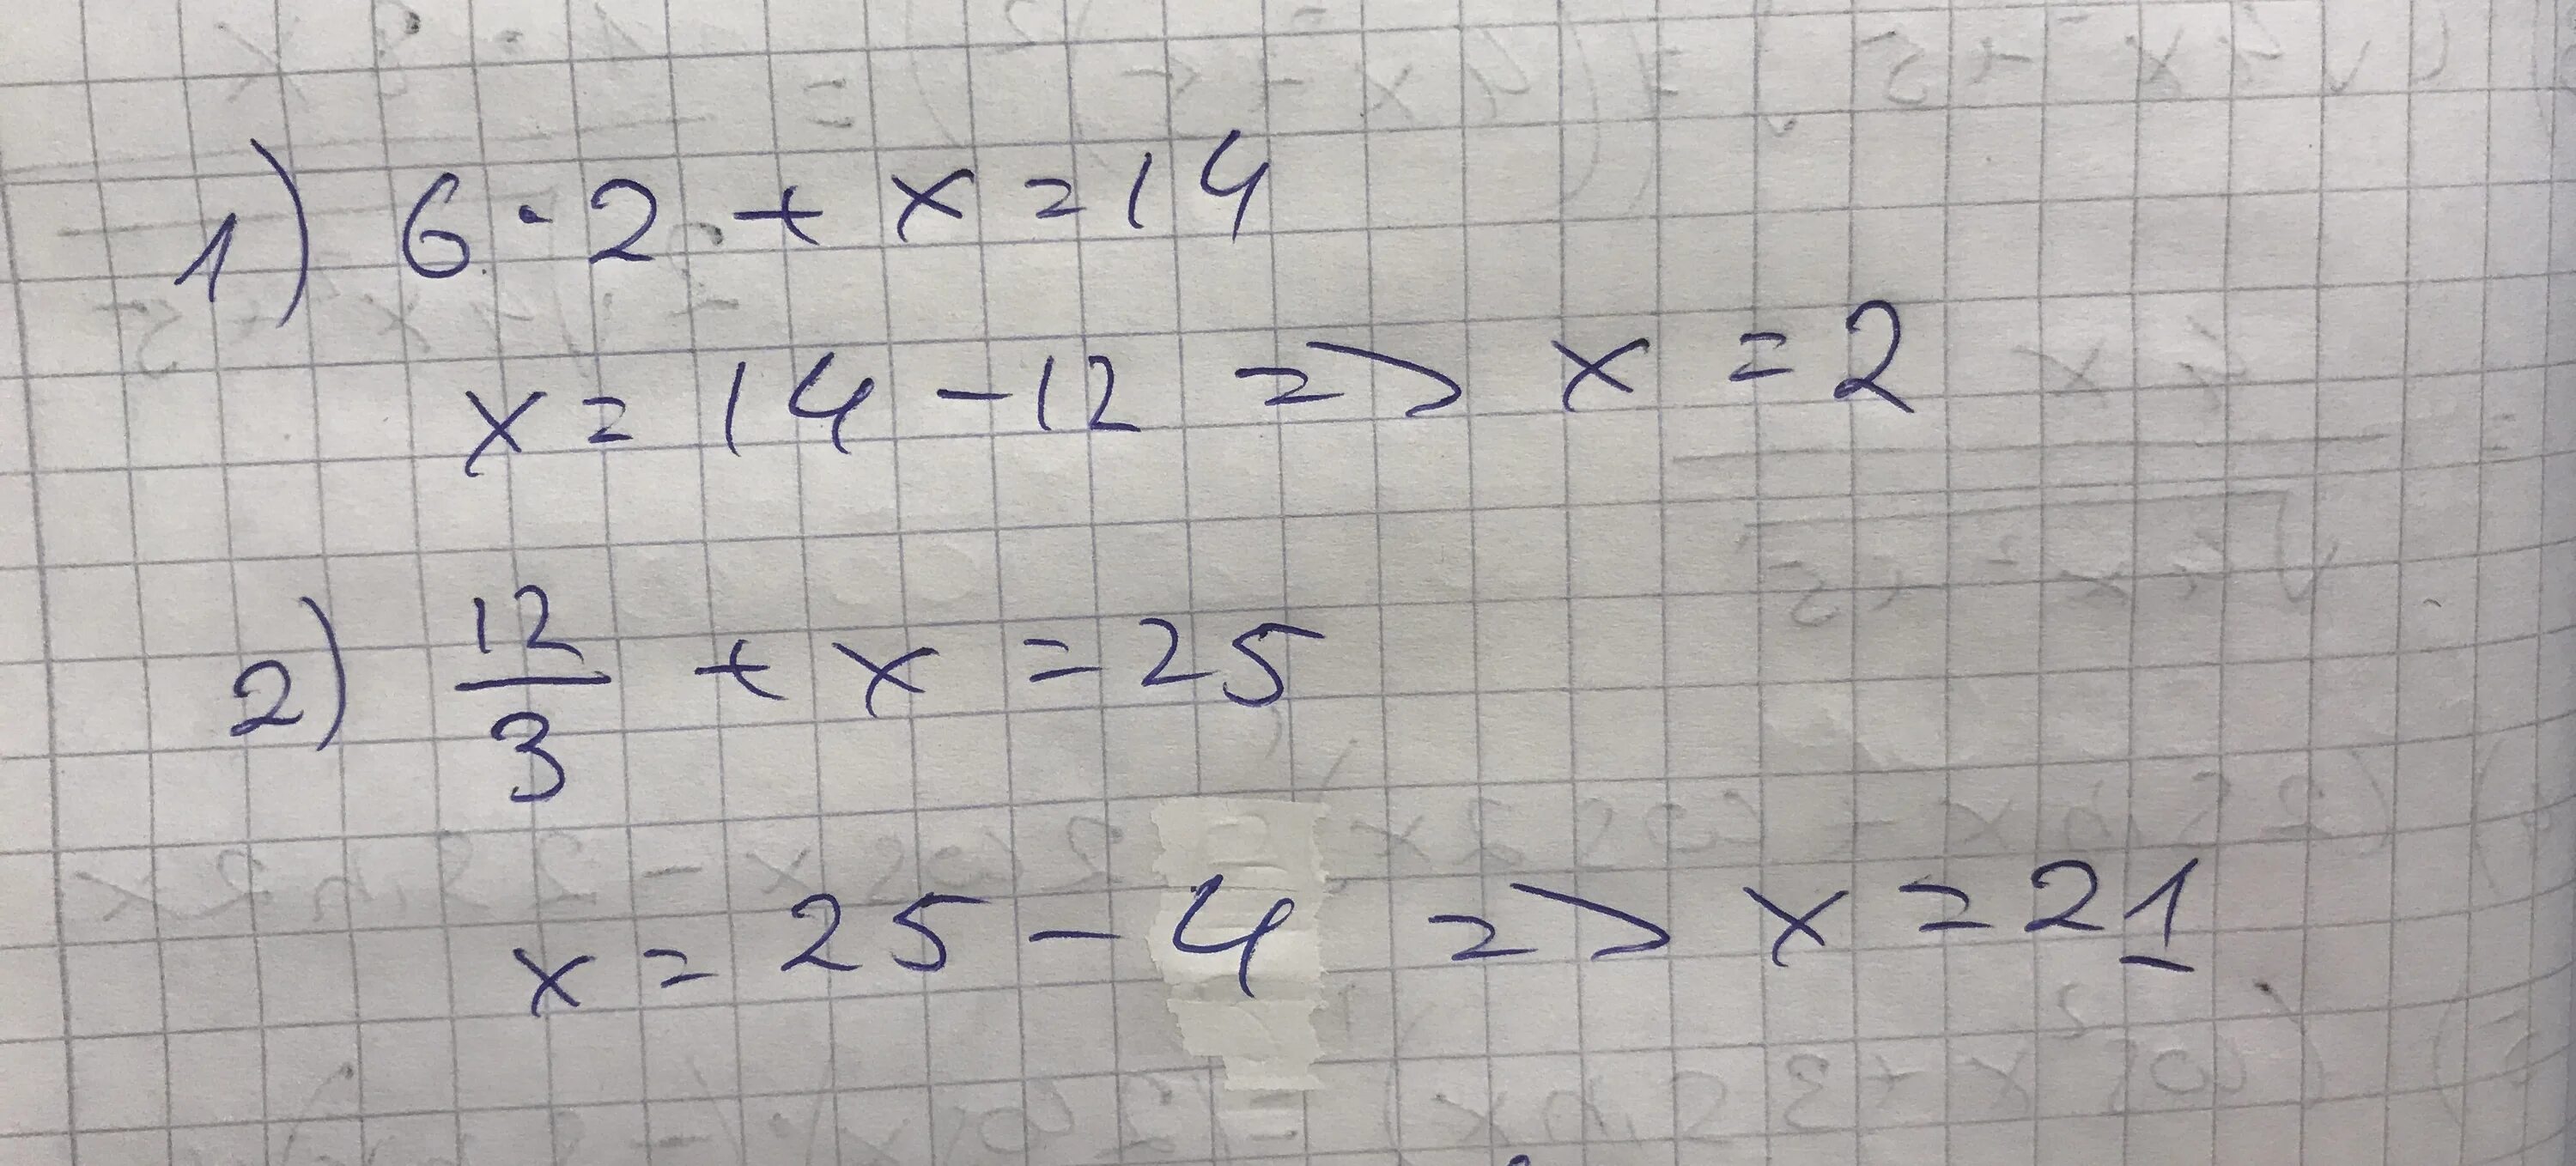 Решение уравнения 12 разделить на Икс равно 3. Уравнение Икс разделить на 3 равно 6. Минус 2 Икс деленное на 5 и минус 2 Икс деленное на 3. Икс плюс Икс равно. 18 6 3 равно 16